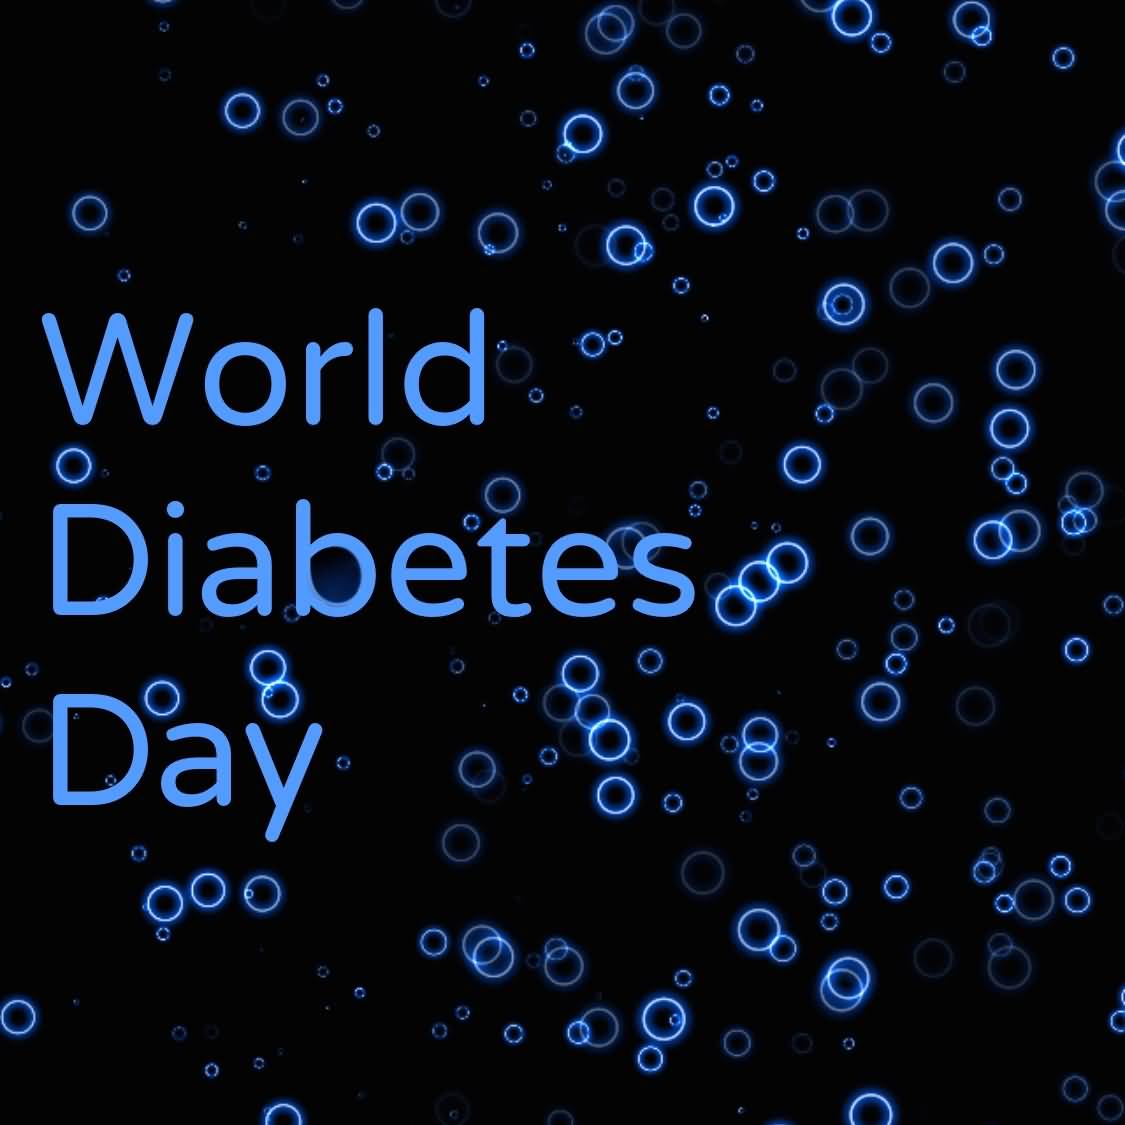 World Diabetes Day Image